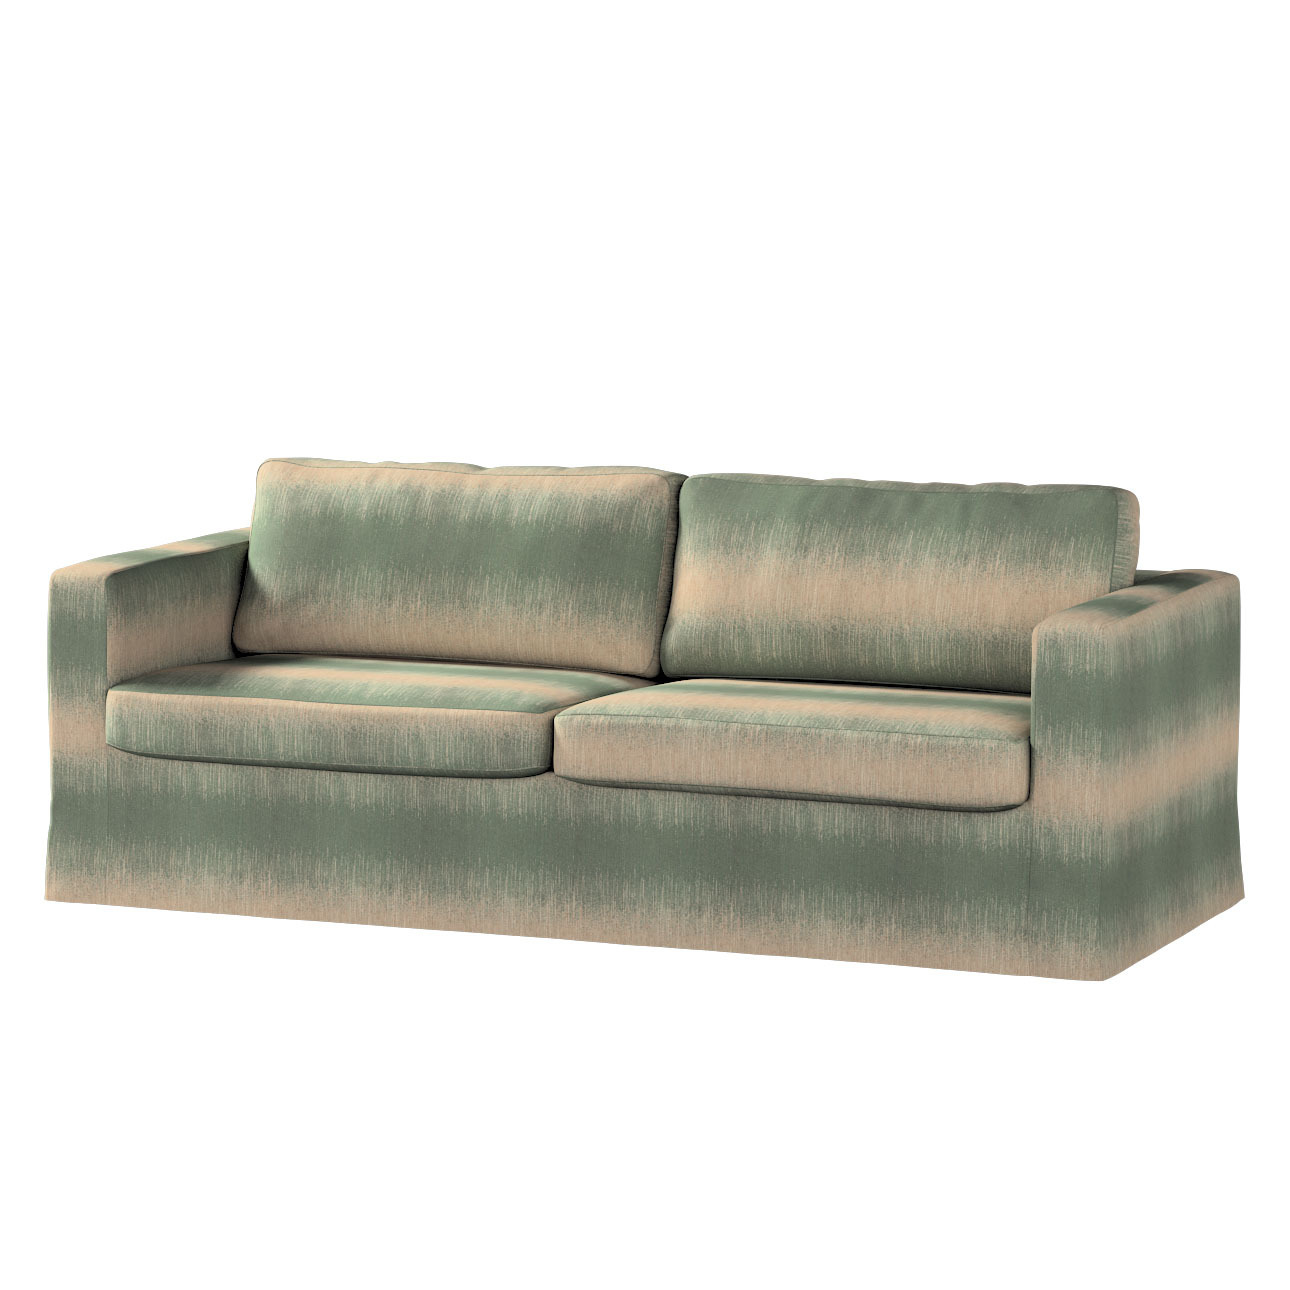 Bezug für Karlstad 3-Sitzer Sofa nicht ausklappbar, lang, grün-beige, Bezug günstig online kaufen